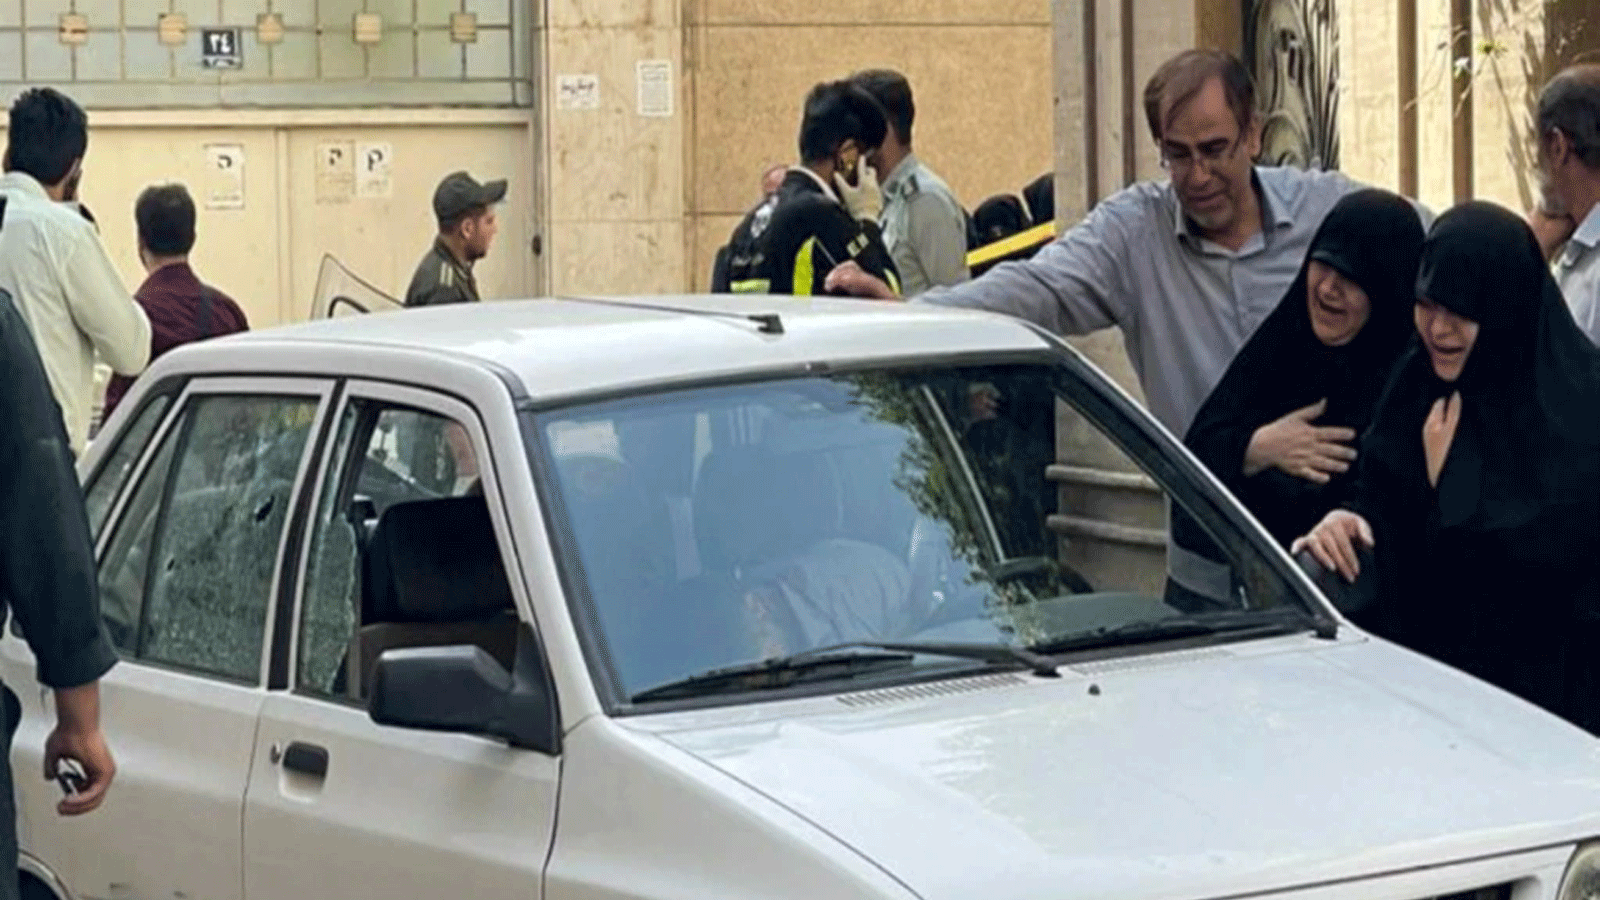 سيدتان تبكيان بجوار سيارة العقيد المغدور صياد خدائي حيث قُتل بالرصاص في طهران. في 22 أيار\مايو.2022